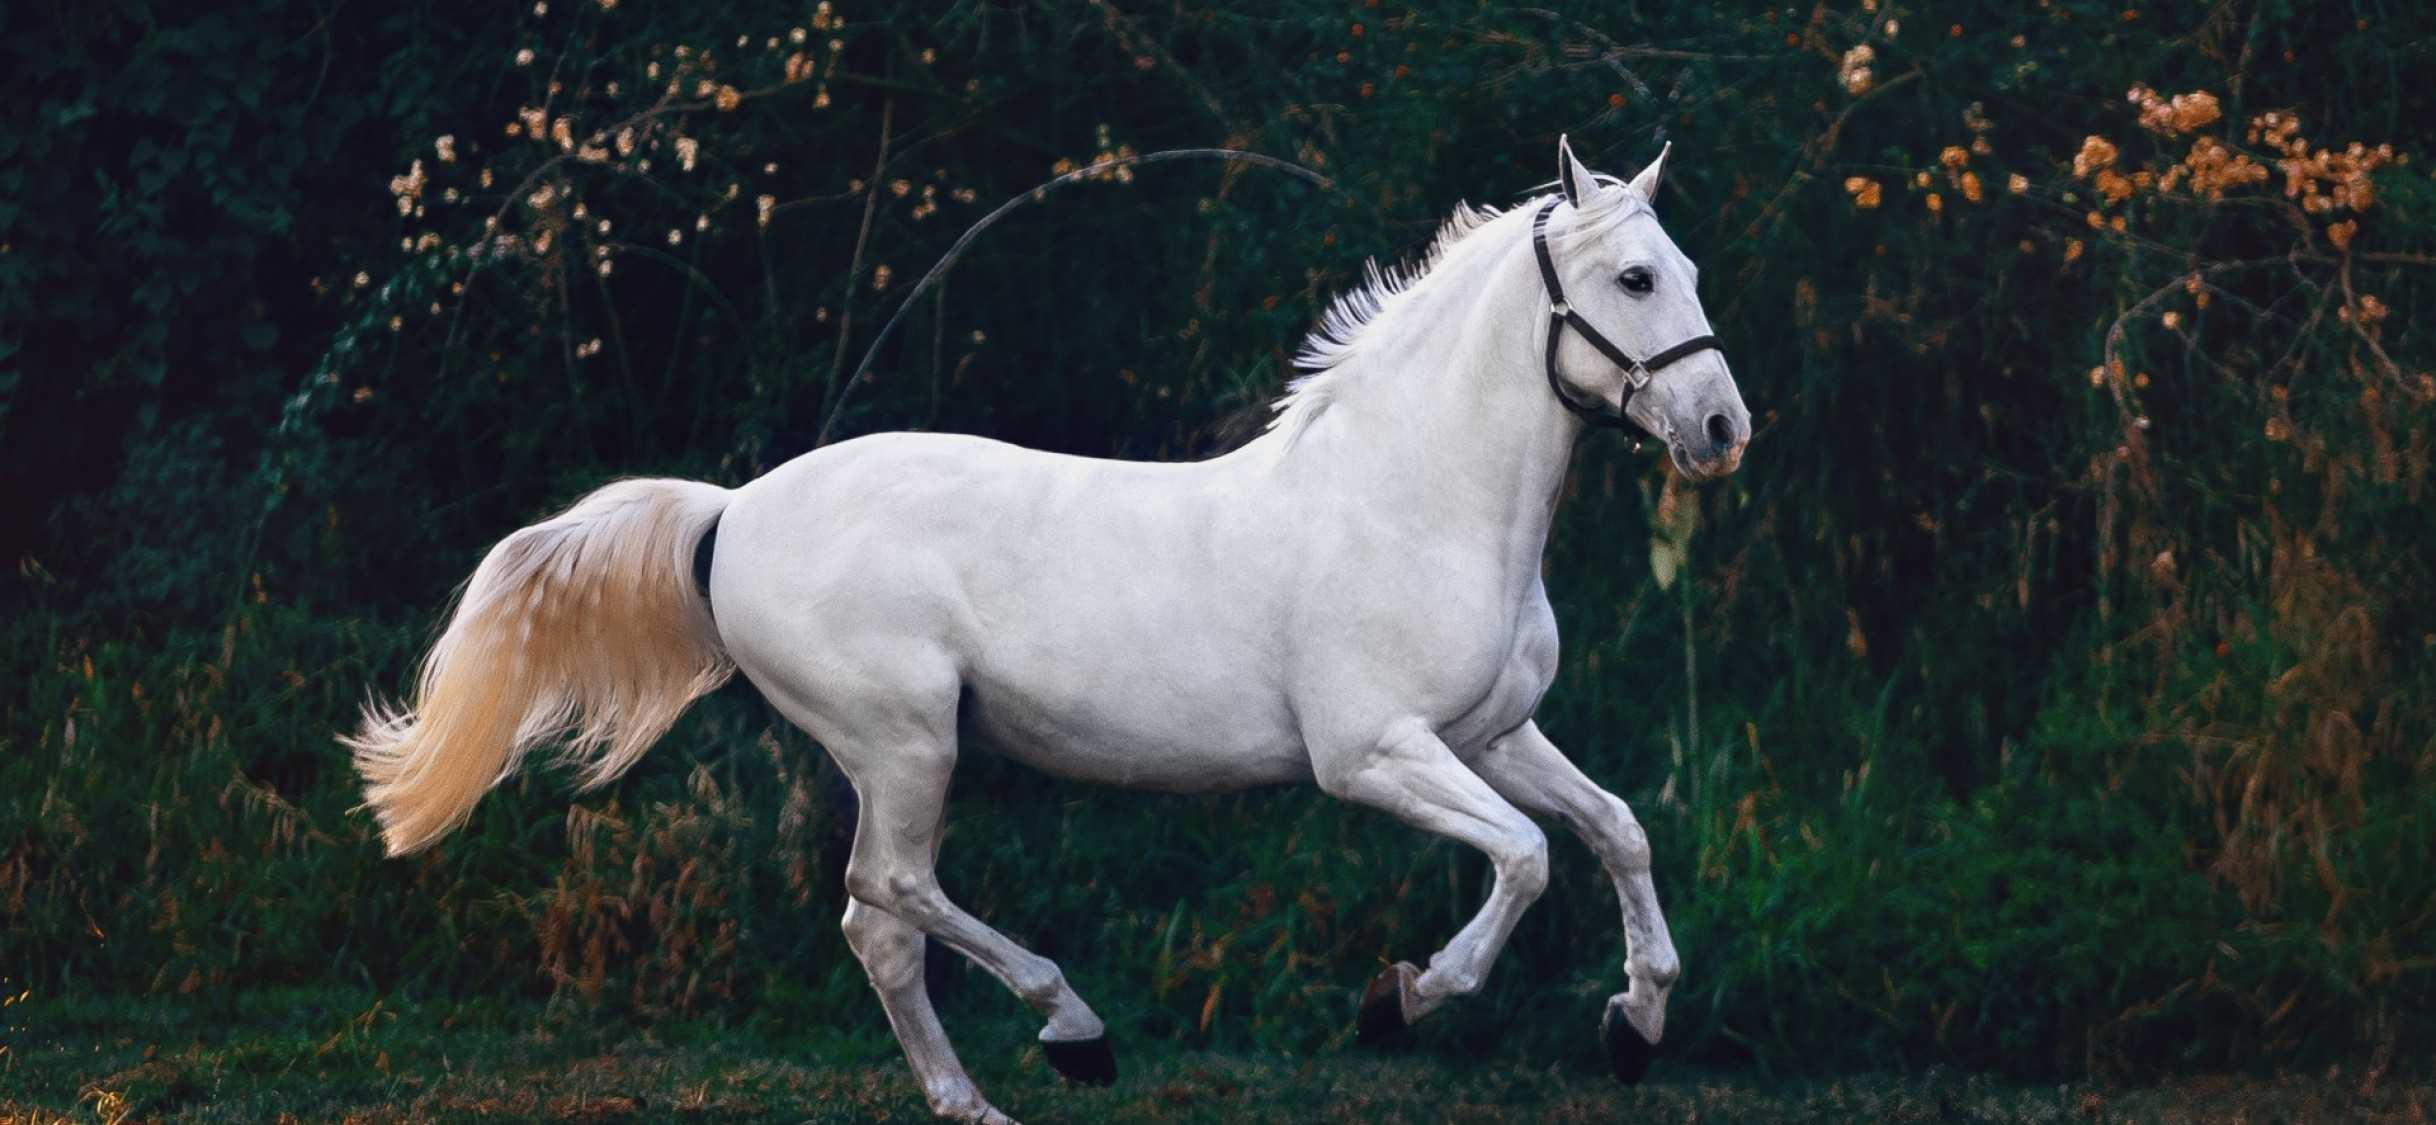 Сонник: ехать на лошади верхом, белая лошадь. толкование снов